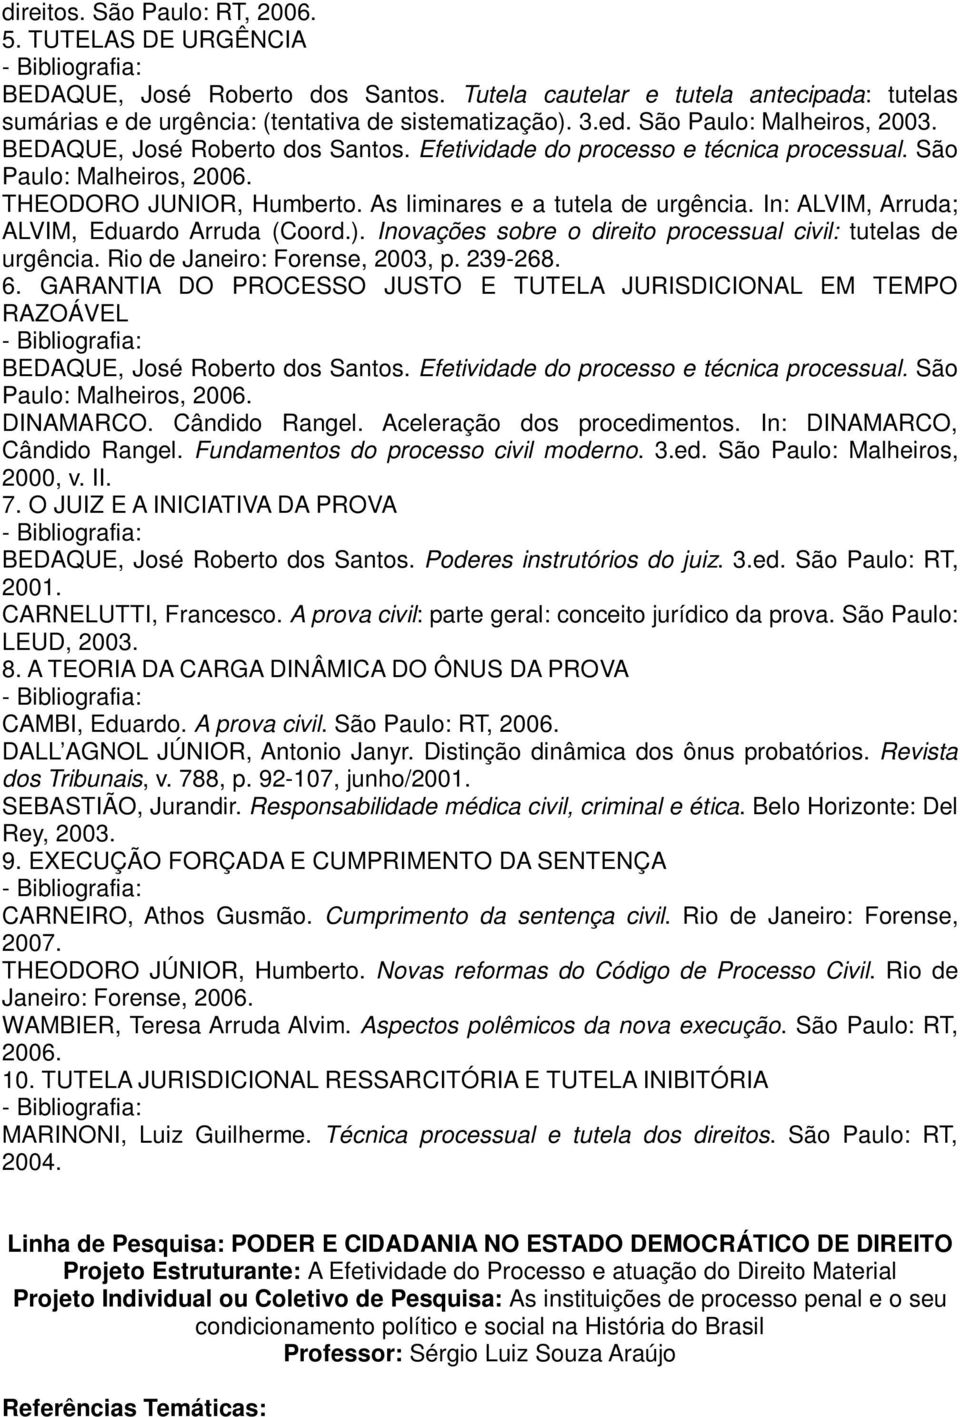 In: ALVIM, Arruda; ALVIM, Eduardo Arruda (Coord.). Inovações sobre o direito processual civil: tutelas de urgência. Rio de Janeiro: Forense, 2003, p. 239-268. 6.